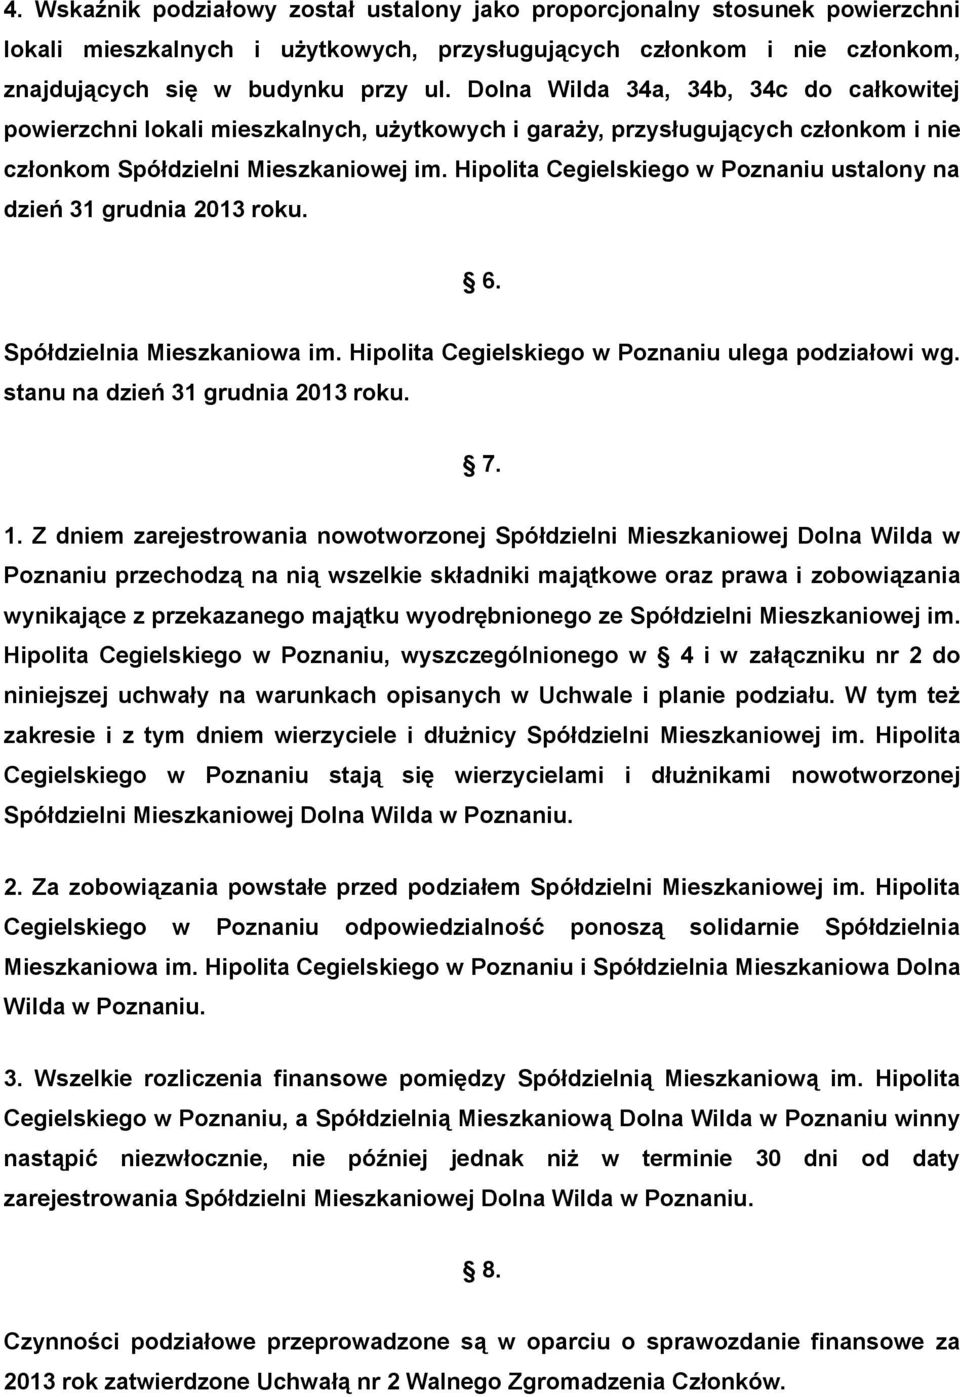 Hipolita Cegielskiego w Poznaniu ustalony na dzień 31 grudnia 2013 roku. 6. Spółdzielnia Mieszkaniowa im. Hipolita Cegielskiego w Poznaniu ulega podziałowi wg. stanu na dzień 31 grudnia 2013 roku. 7.